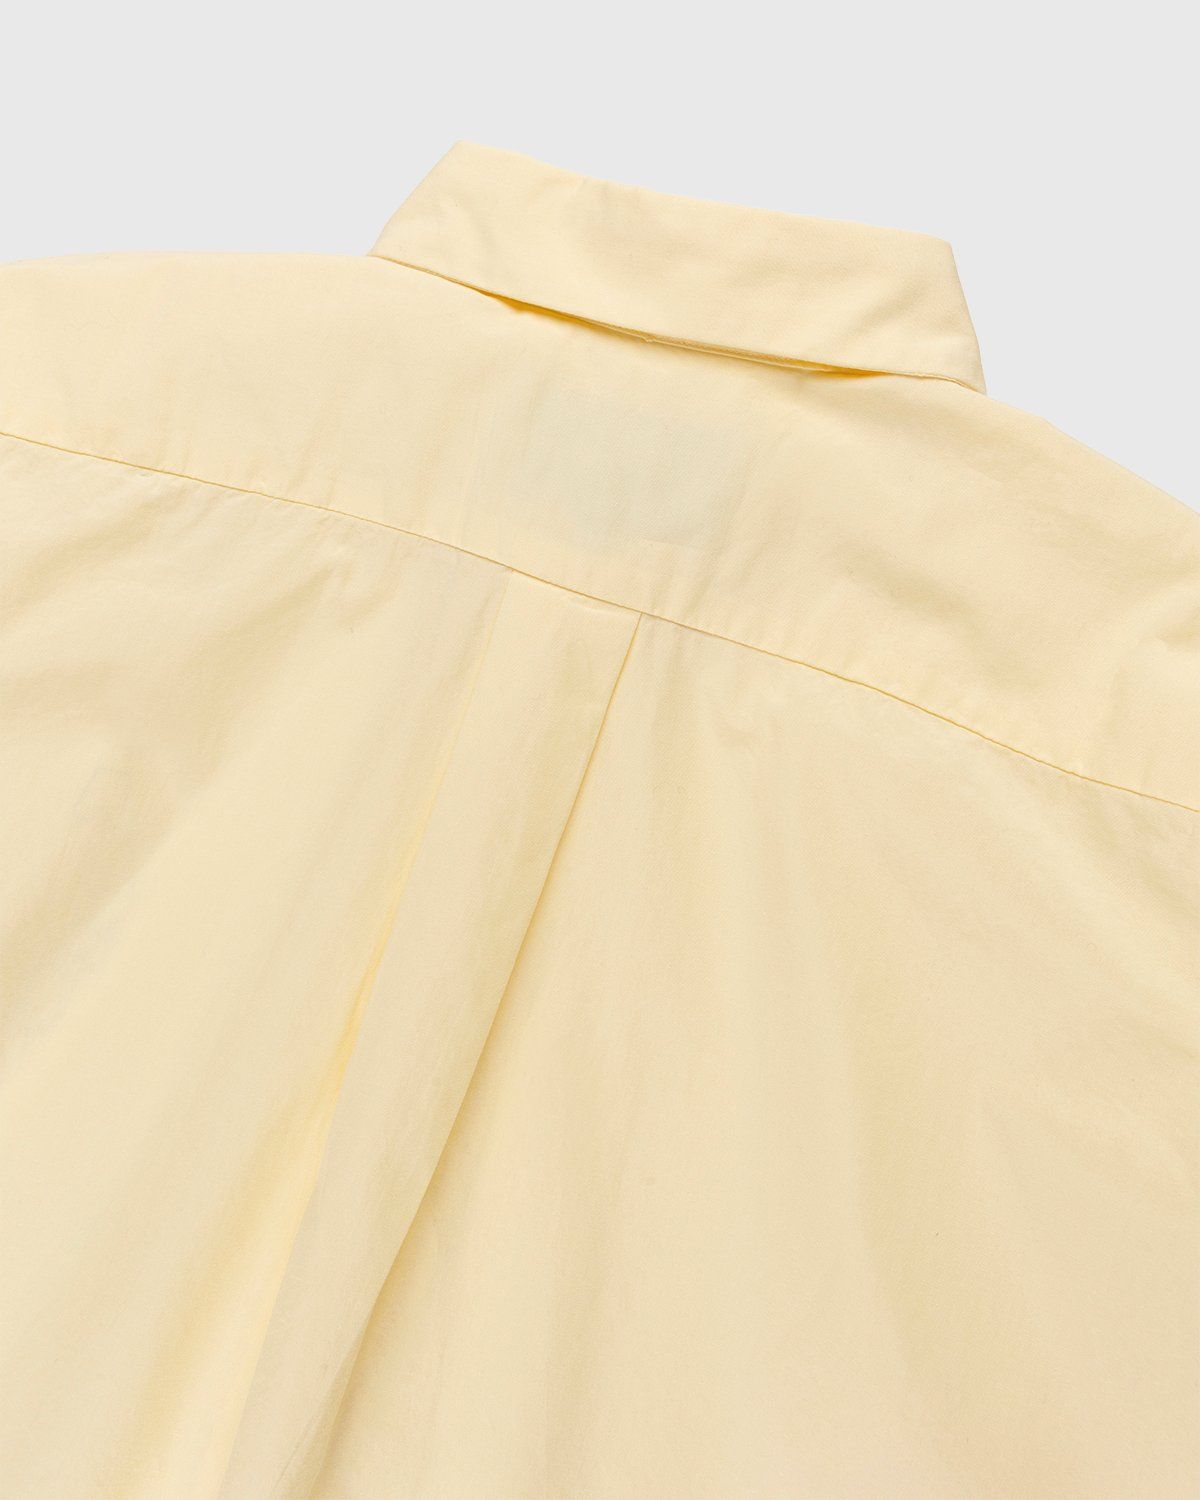 Carne Bollente – Dancing Keen Shirt Butter Yellow - Longsleeve Shirts - Beige - Image 4